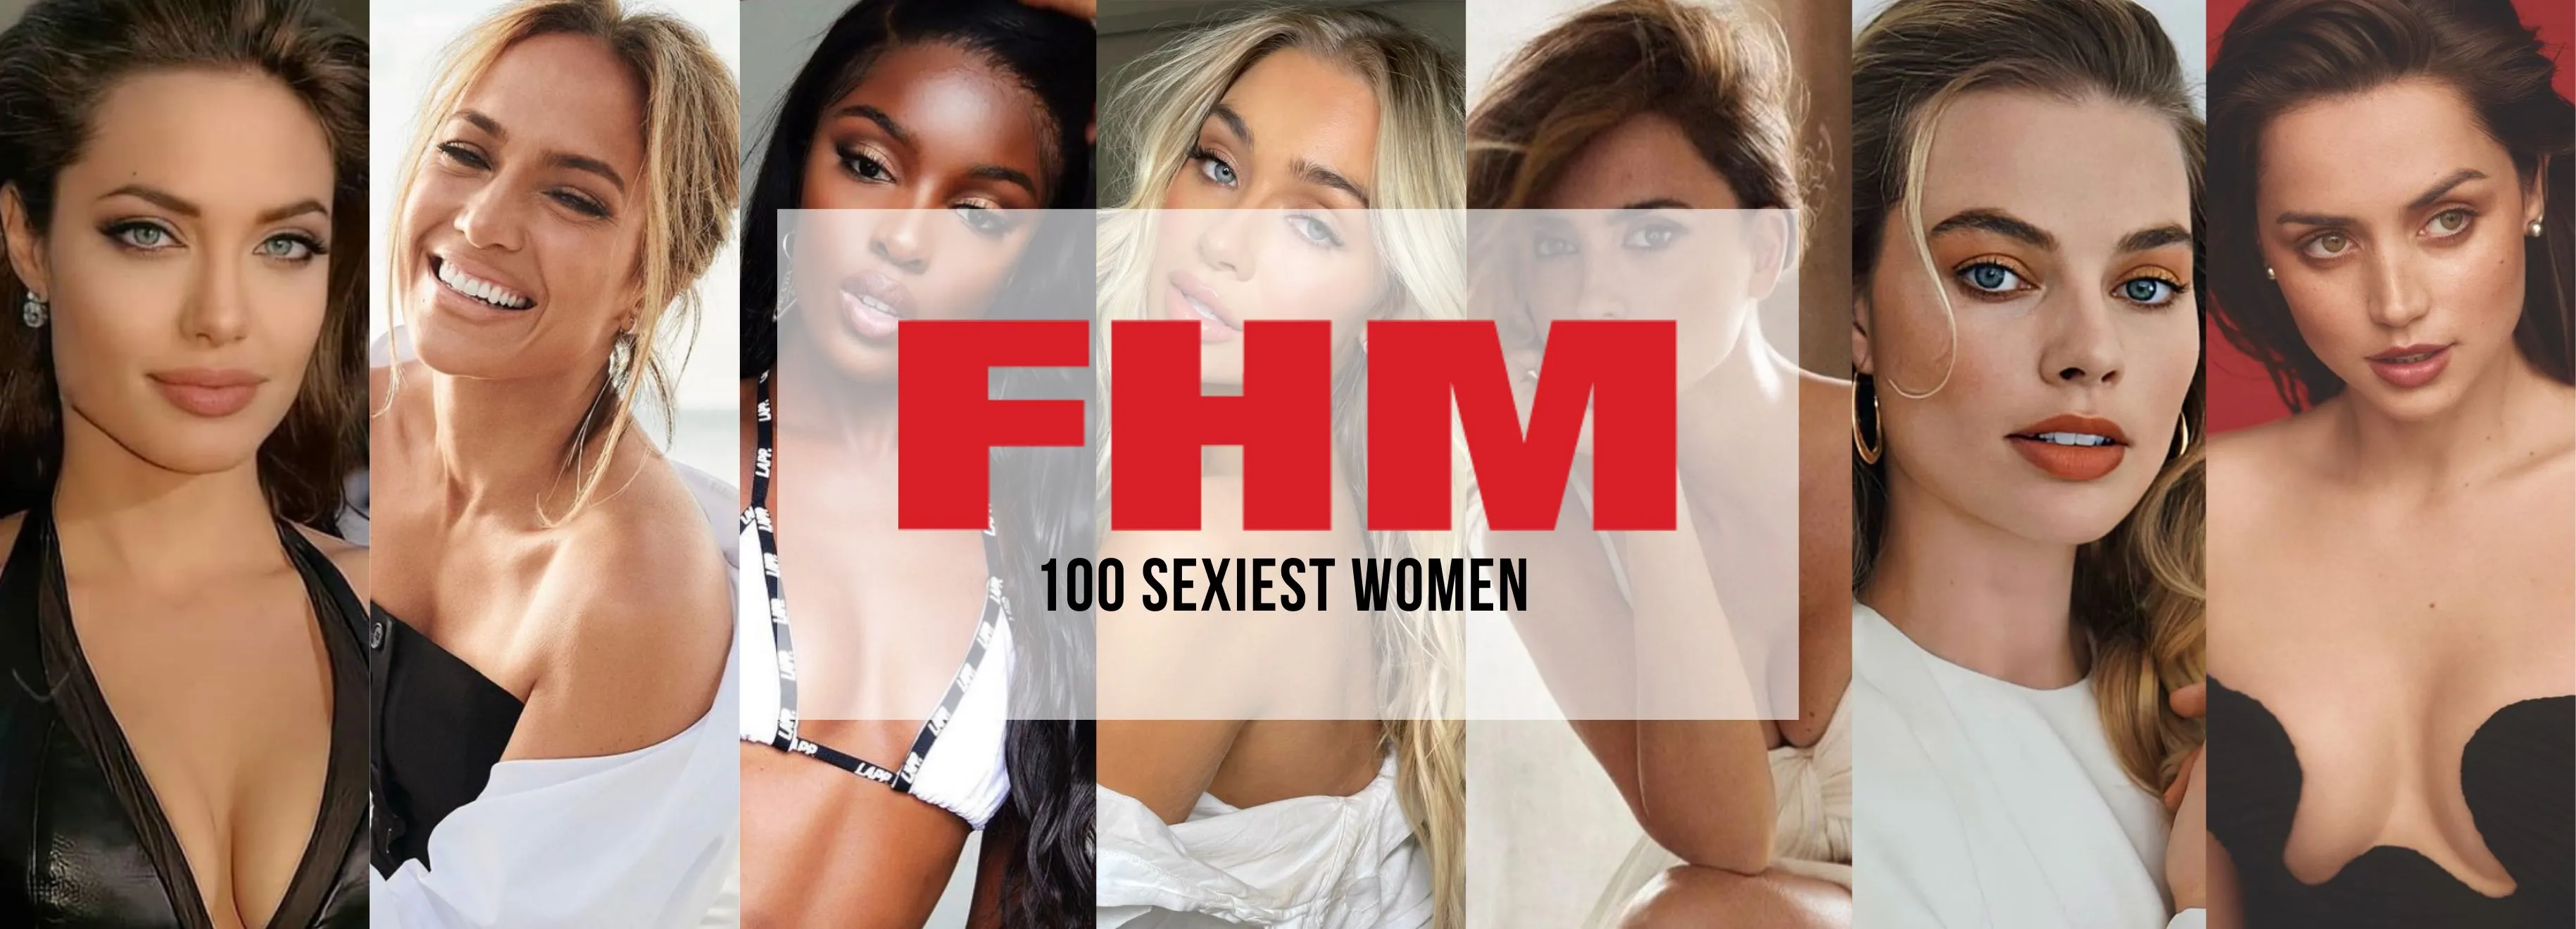 100 sexiest women 6 banner